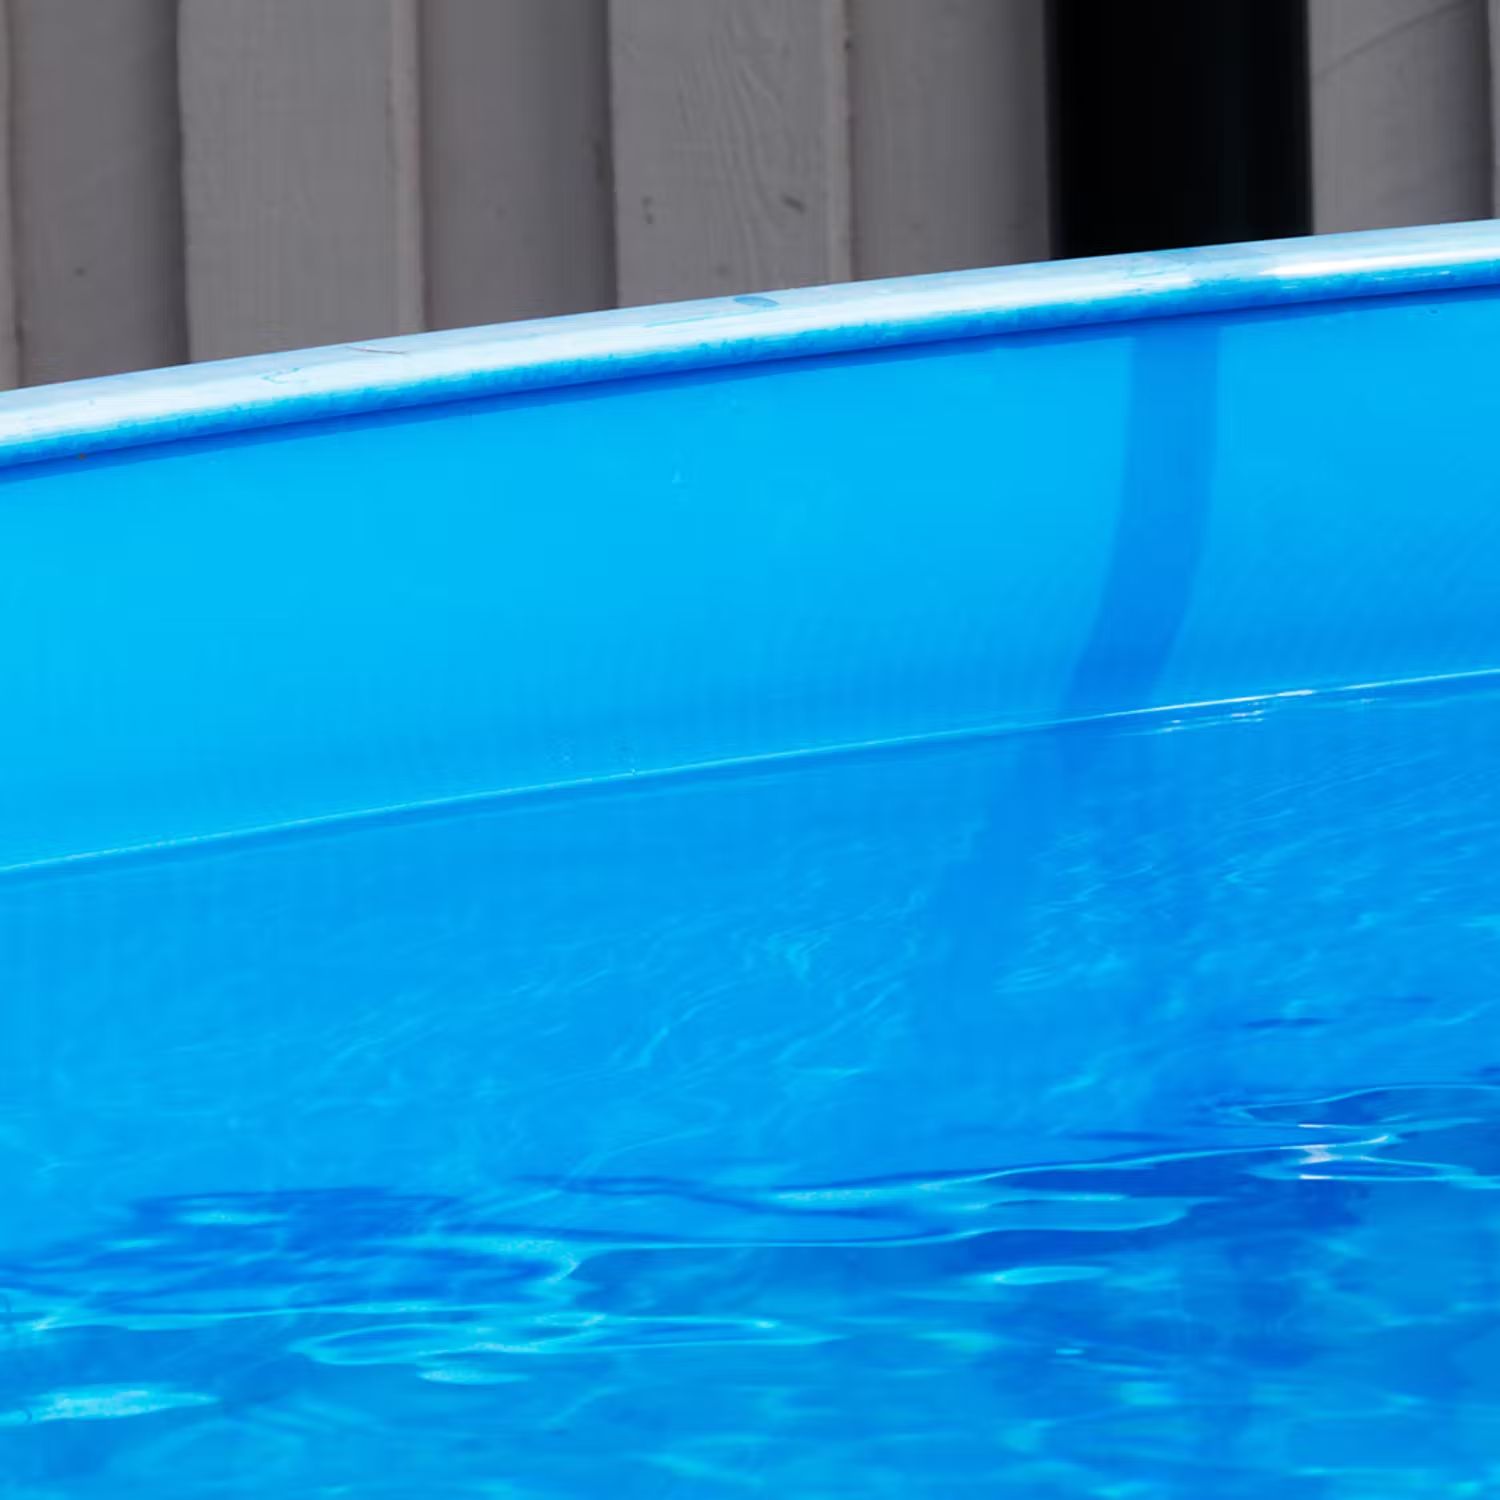 Pool-liner i färg - Blå pool-liner